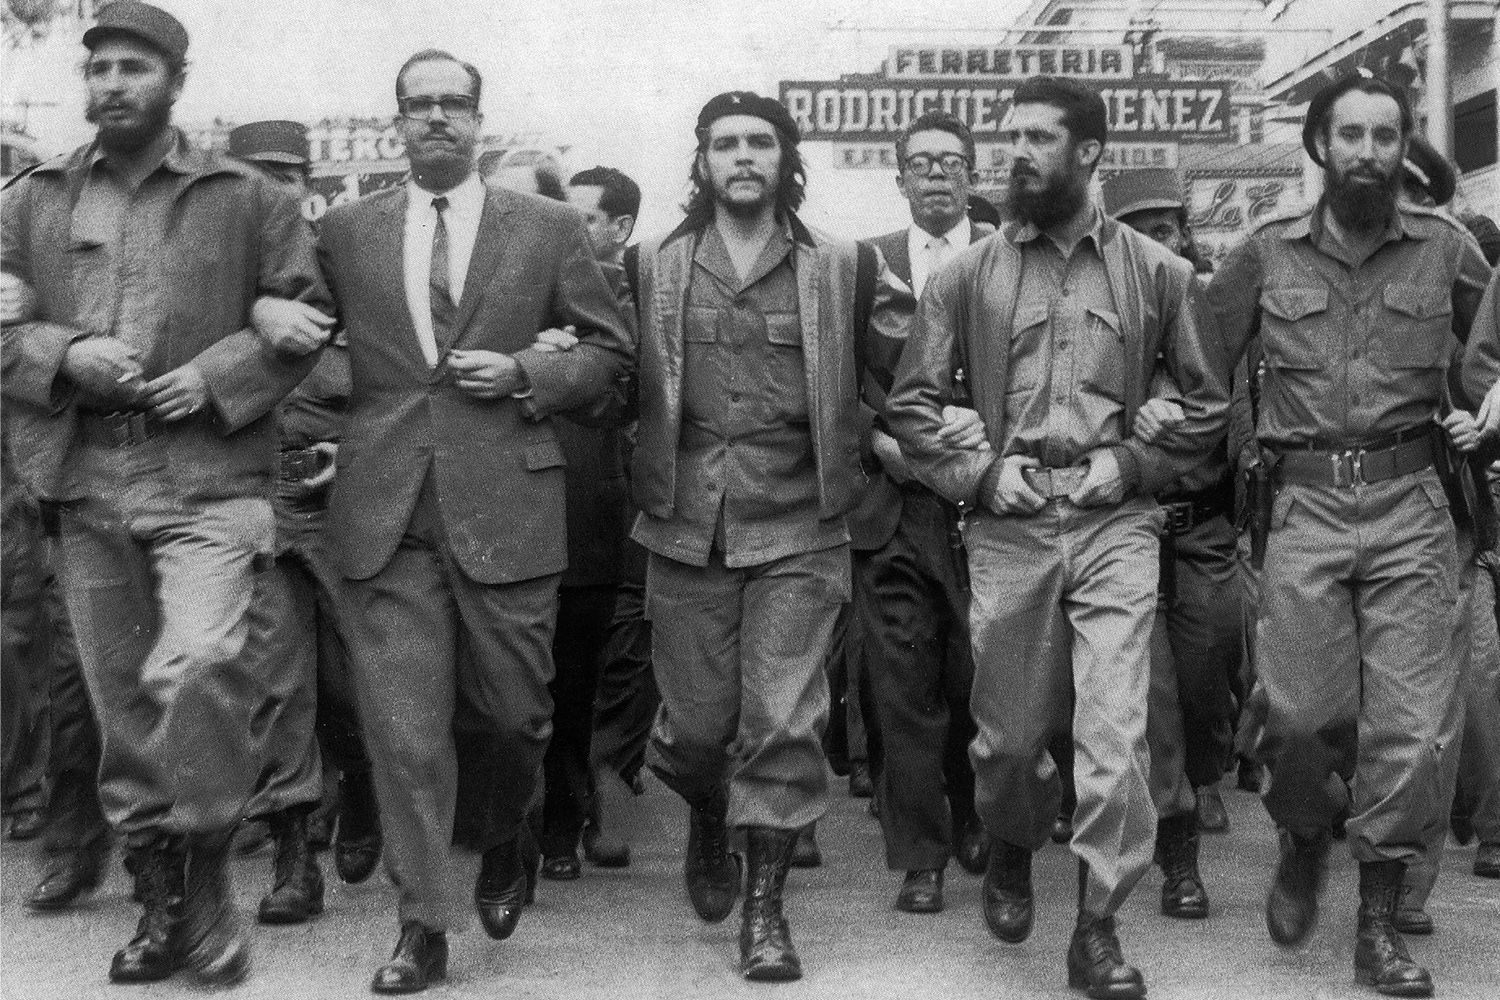 Saiba como ocorreu a Revolução Cubana e quais seus protagonistas